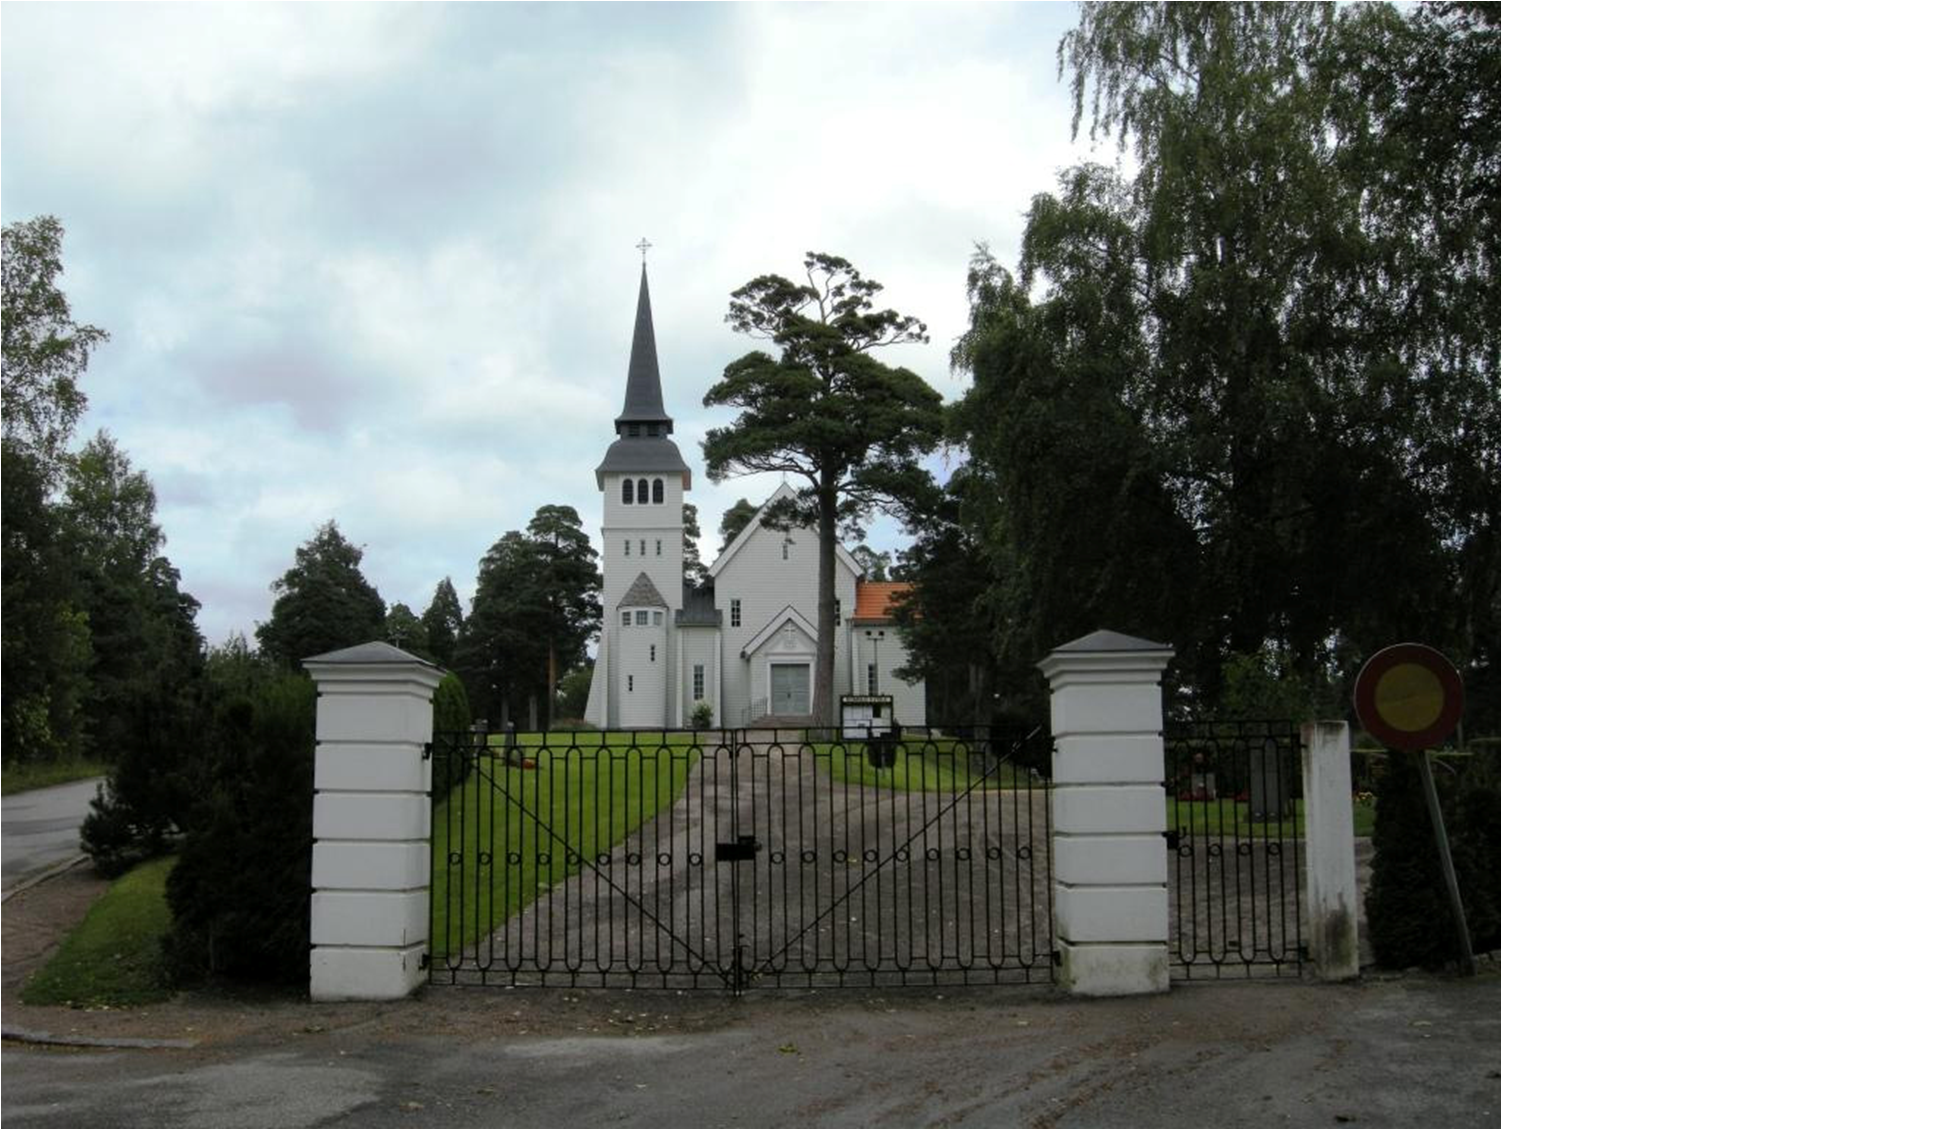 Bomhus kyrka sedd från kyrkogårdens västra ingång